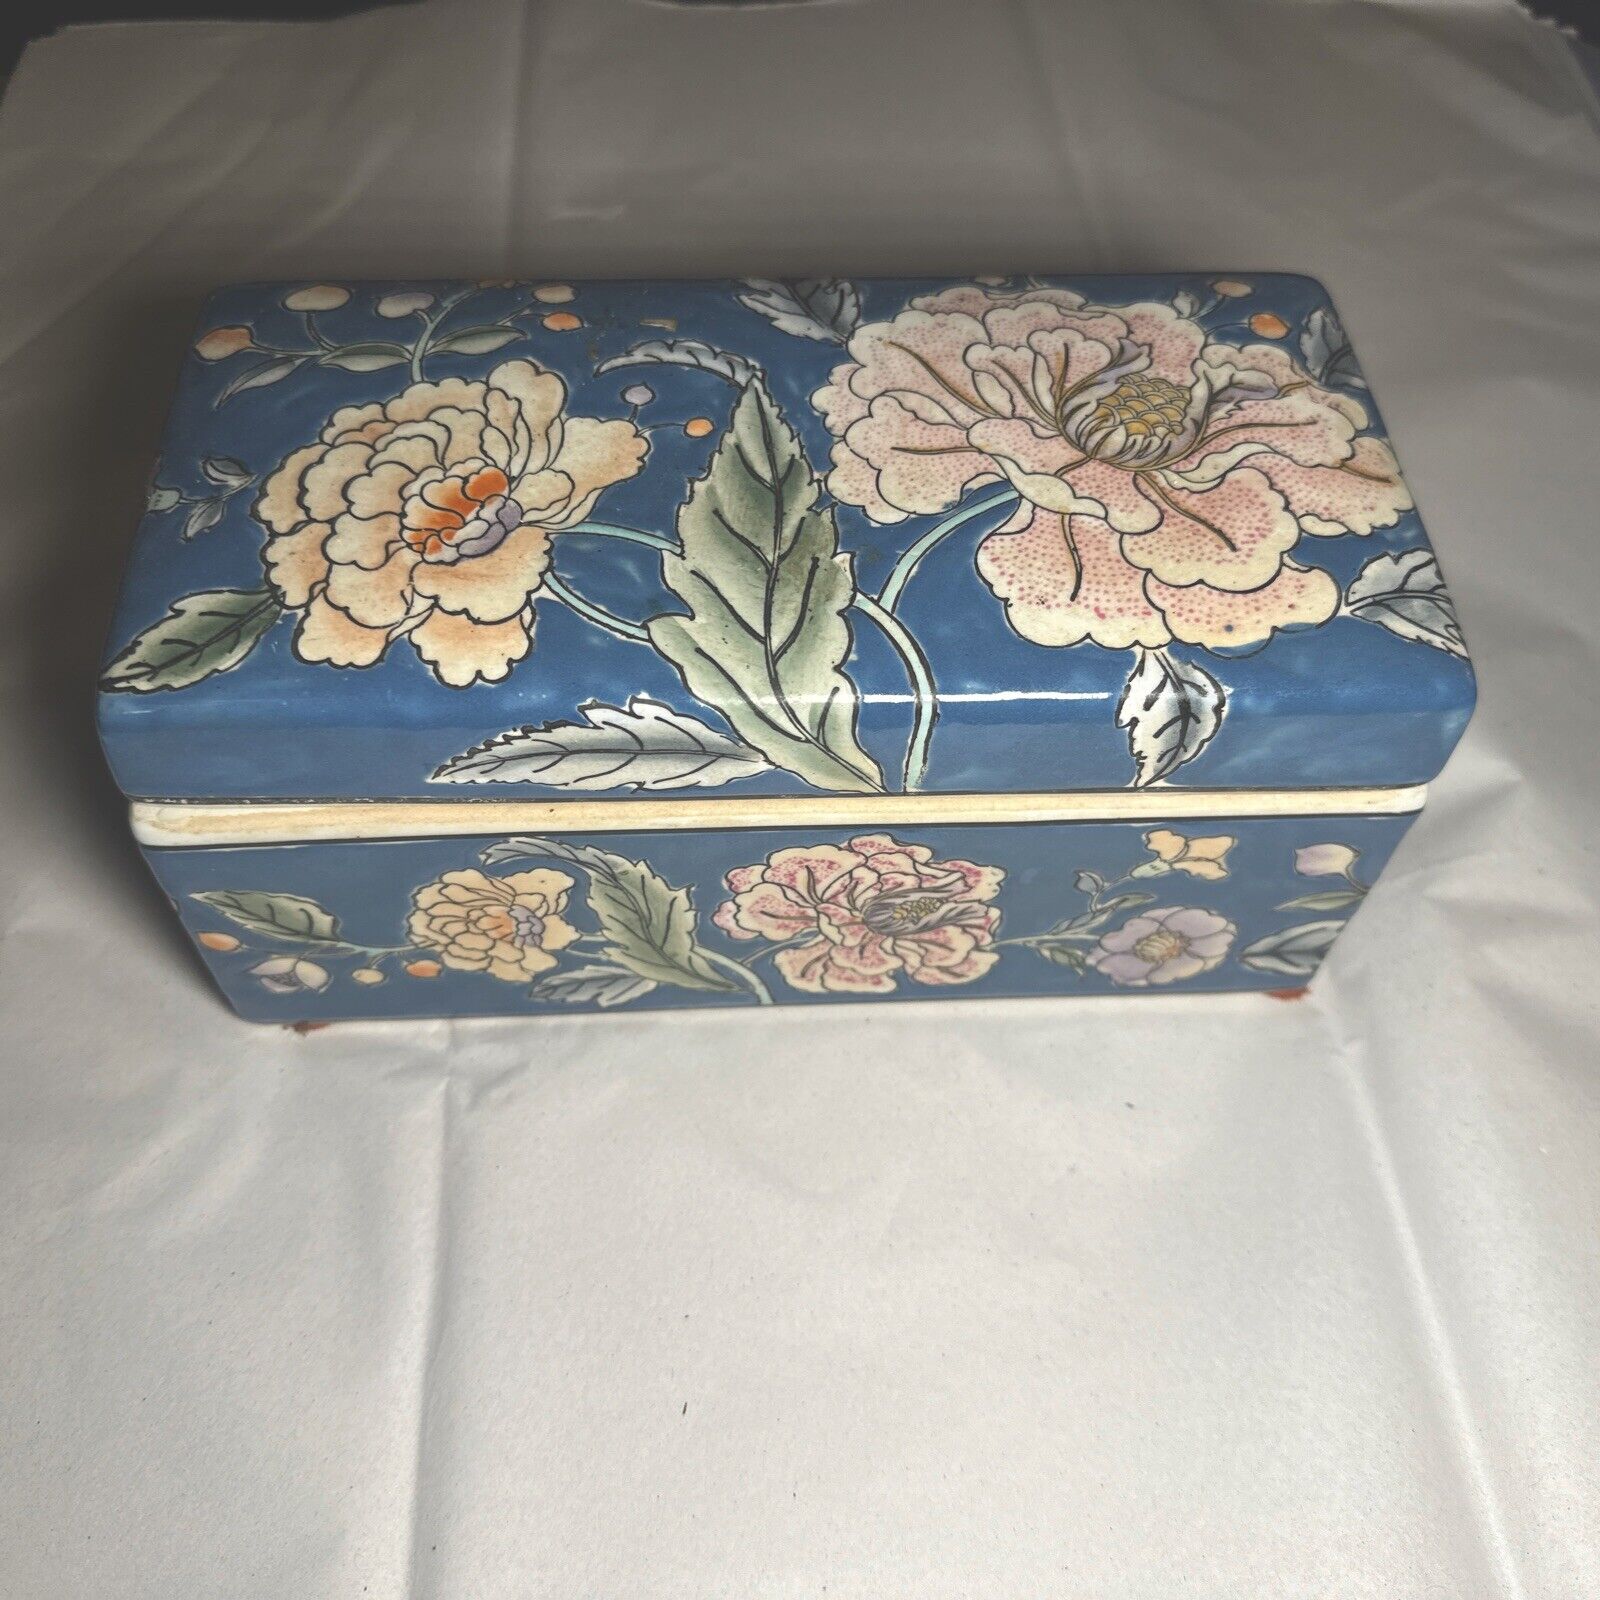 Vintage Porcelain Trinket Box with Floral Enamel